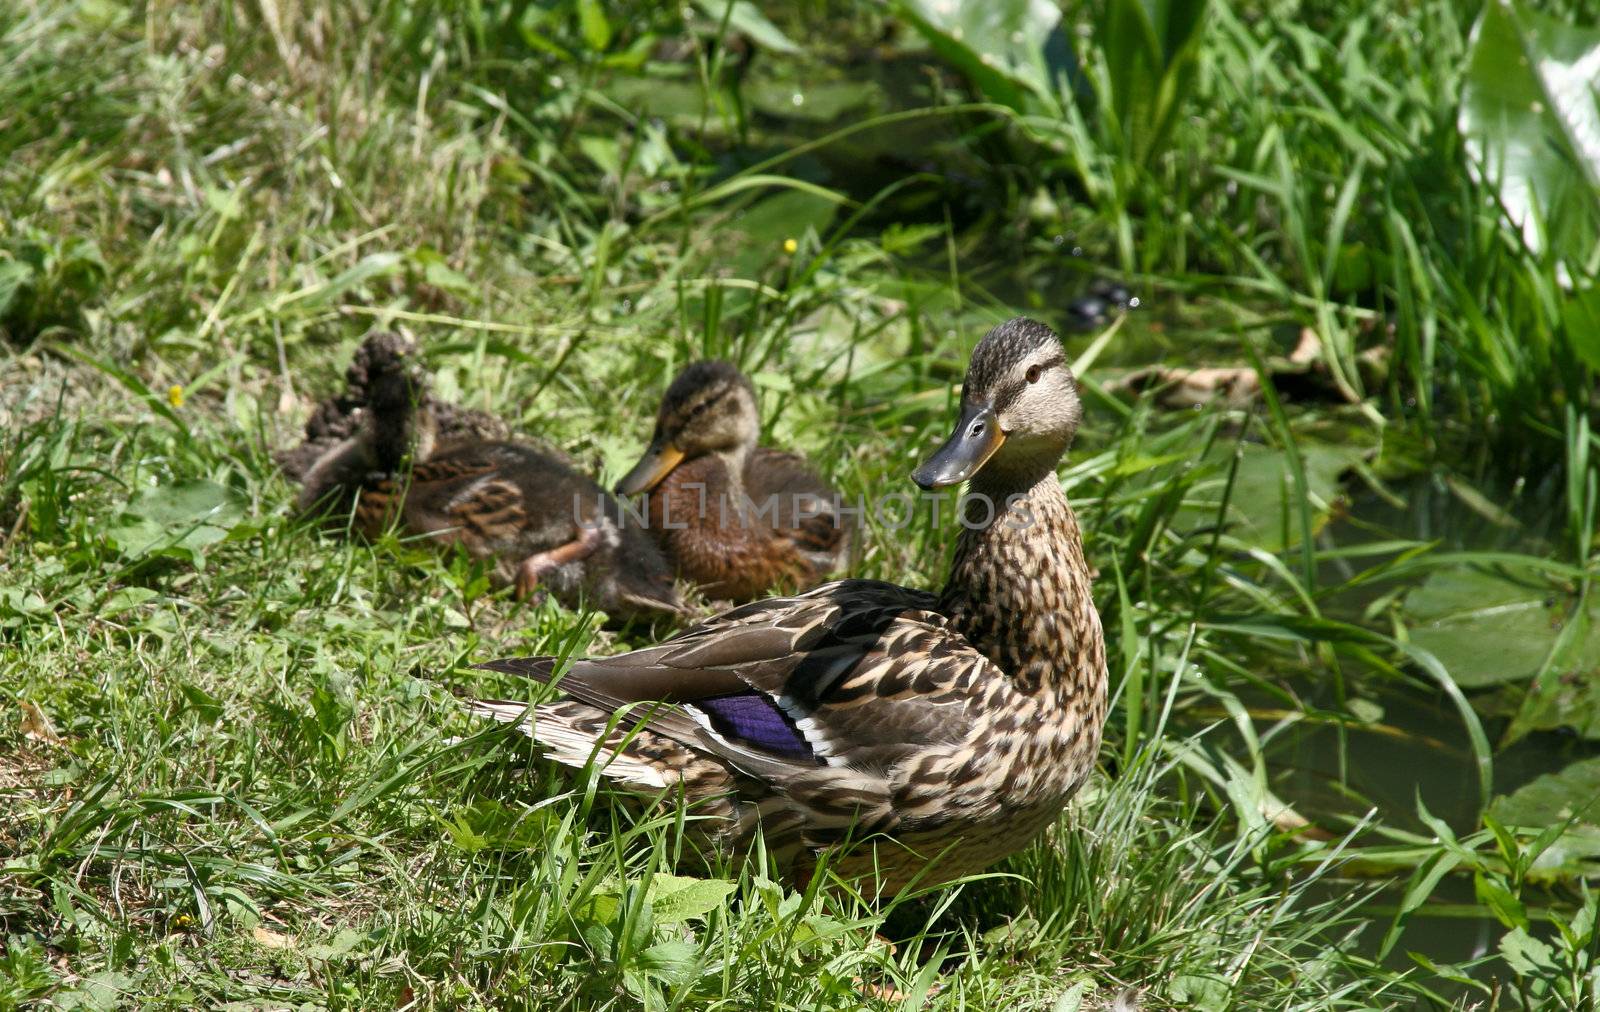 Mallard duck with ducklings by Keetten_Predators